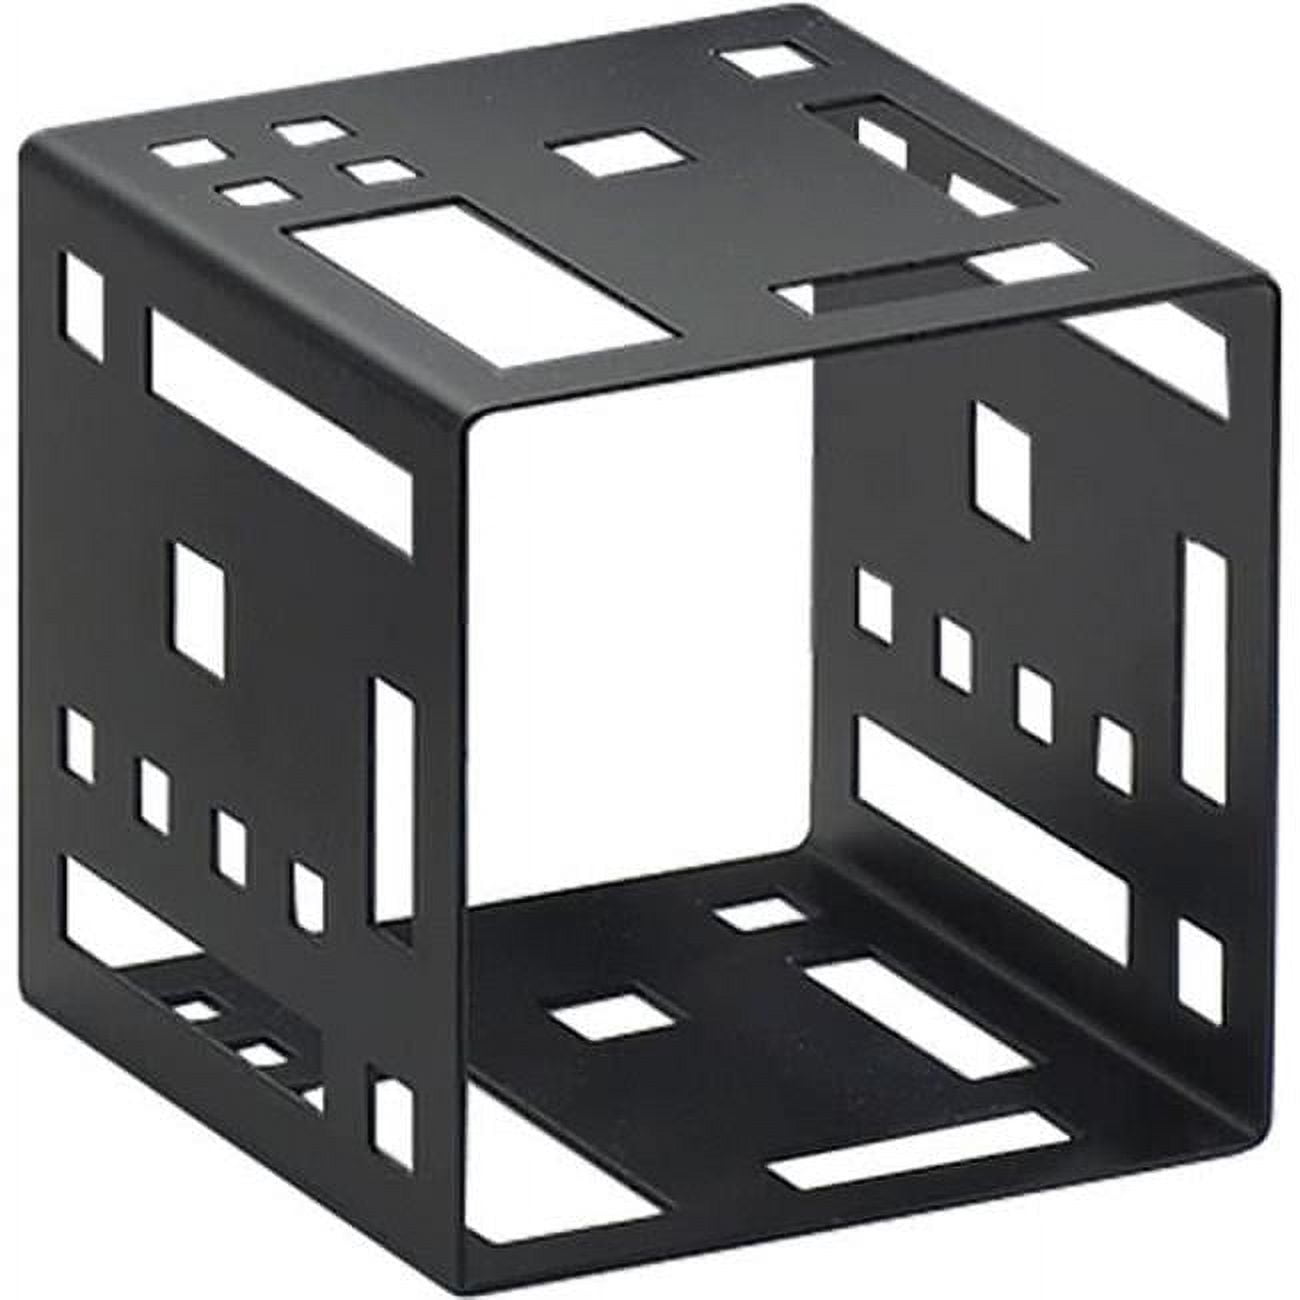 1607-7-13 Squared Cube Riser, Black - 7 X 7 X 7 In.